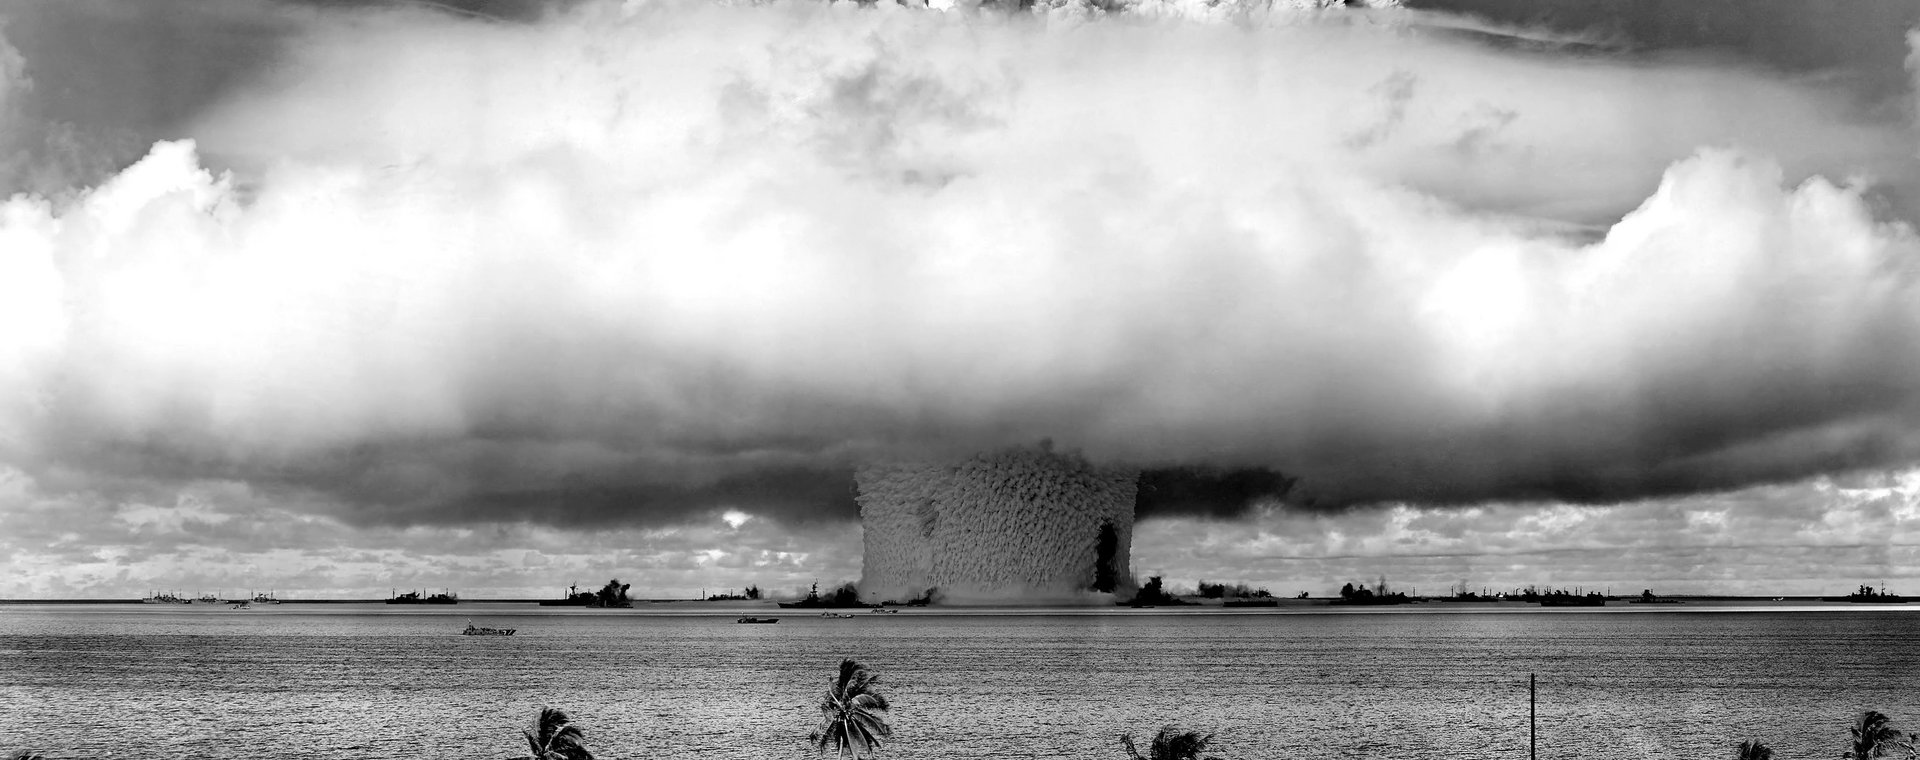 Stany Zjednoczone detonujące bombę atomową na atolu Bikini w Mikronezji, 1946 r.